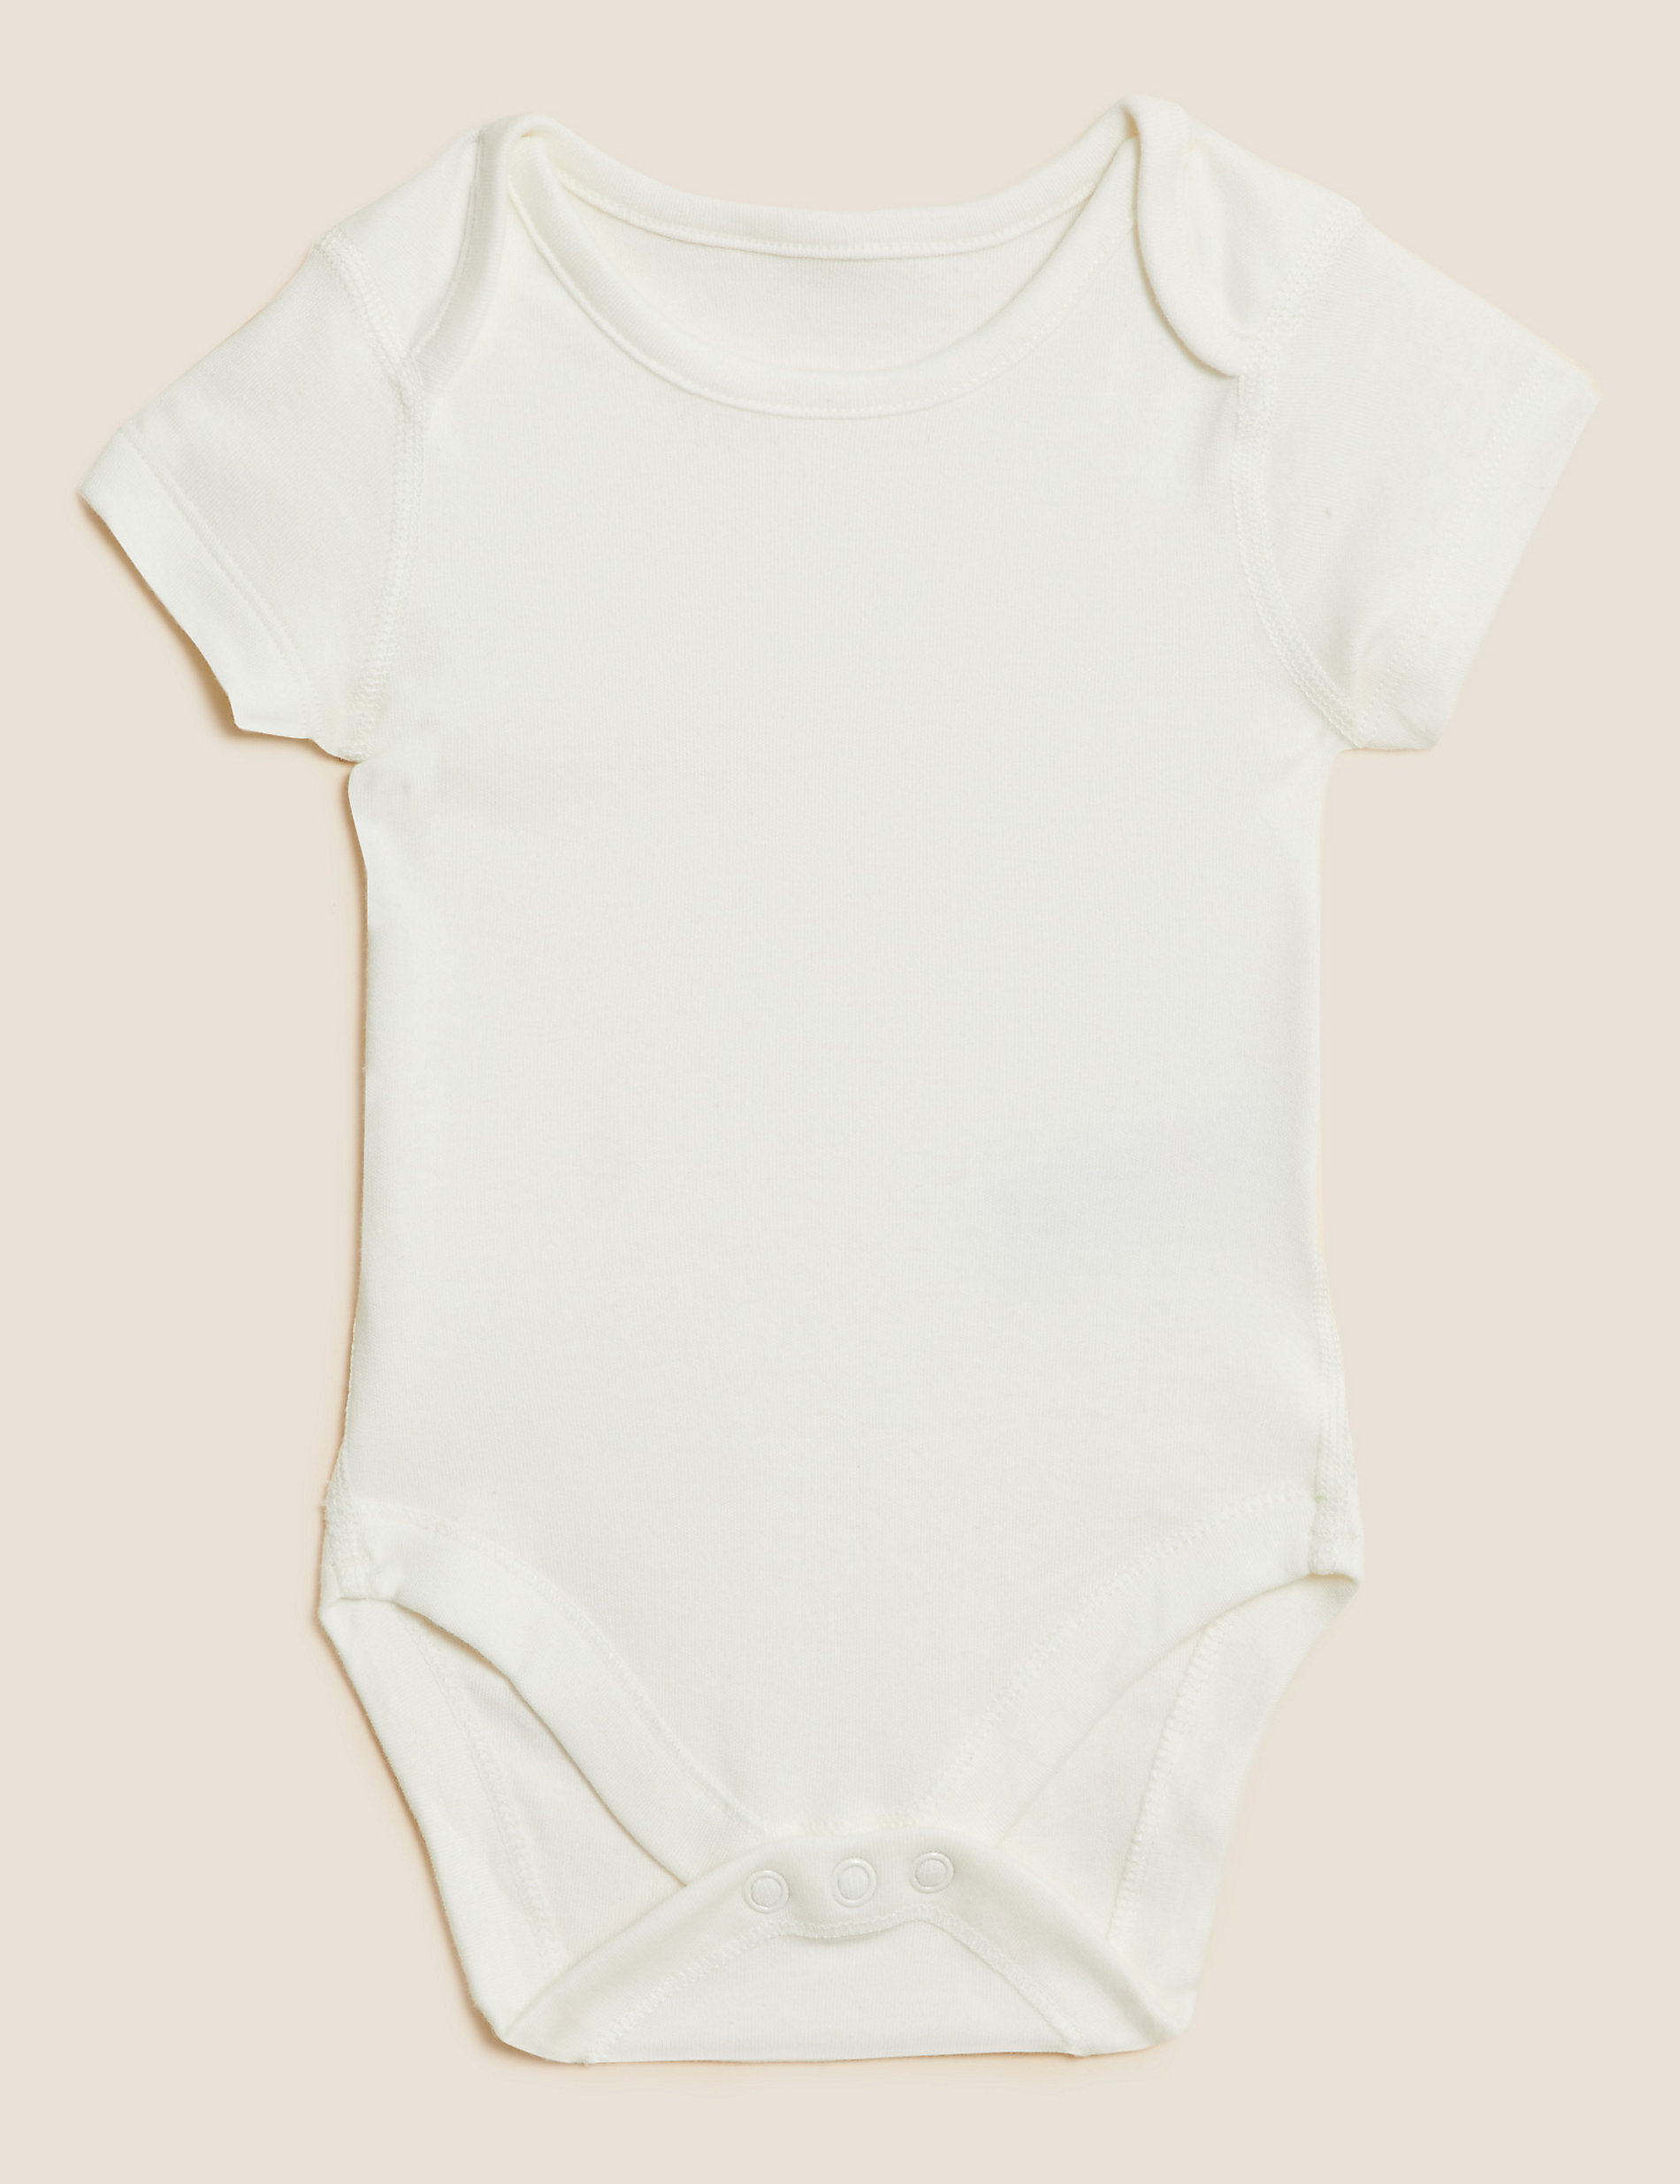 7 件装纯棉狮子婴儿连身衣（5 磅 - 3 岁）